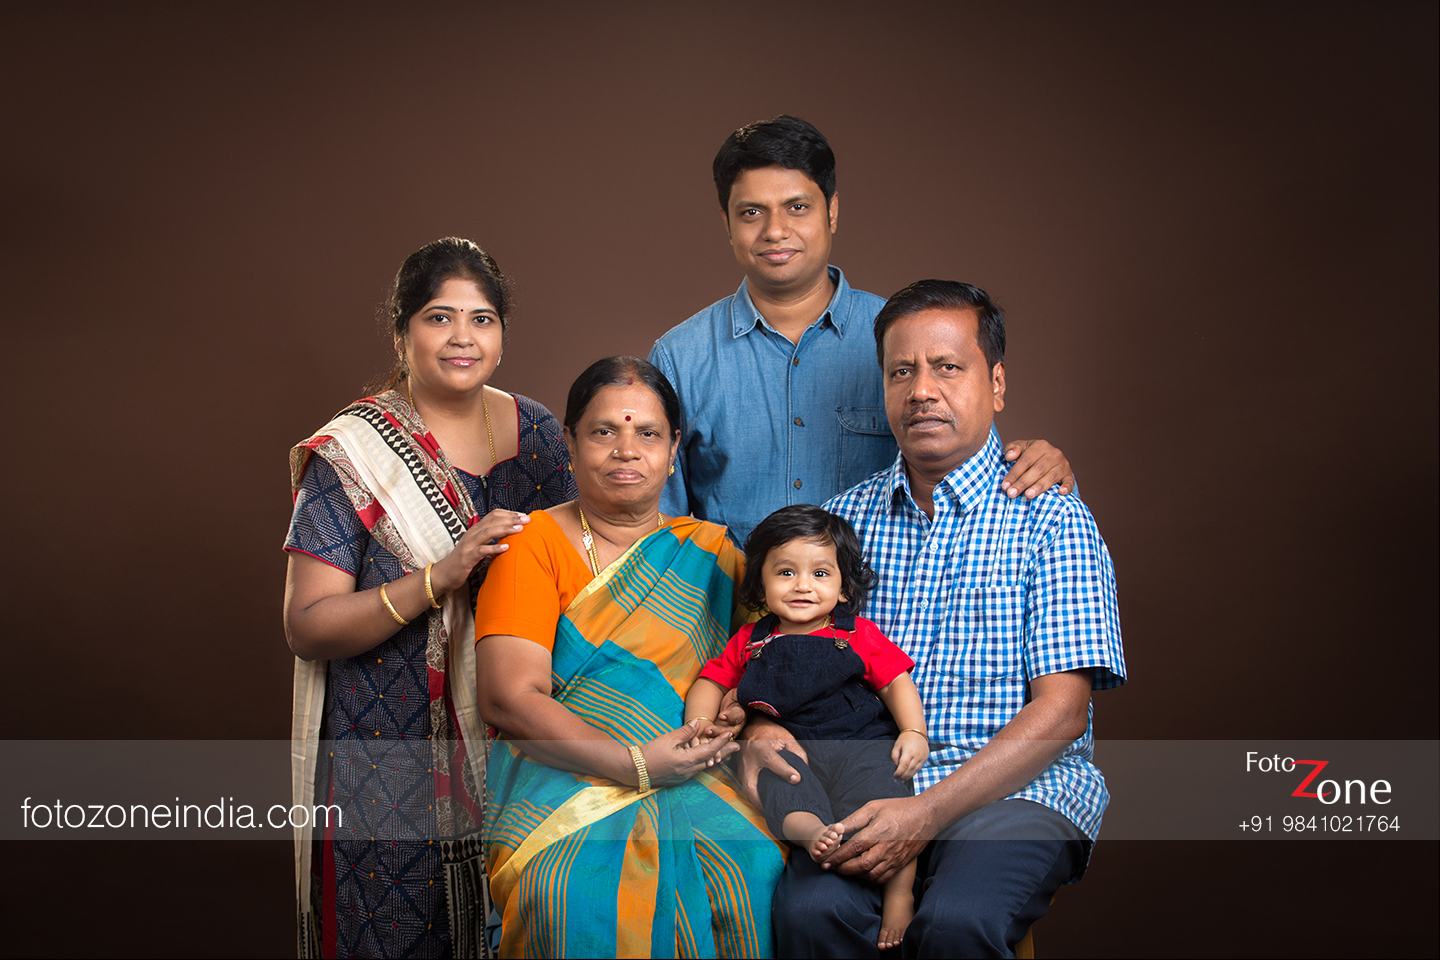 Studio 4 - family portrait | Facebook